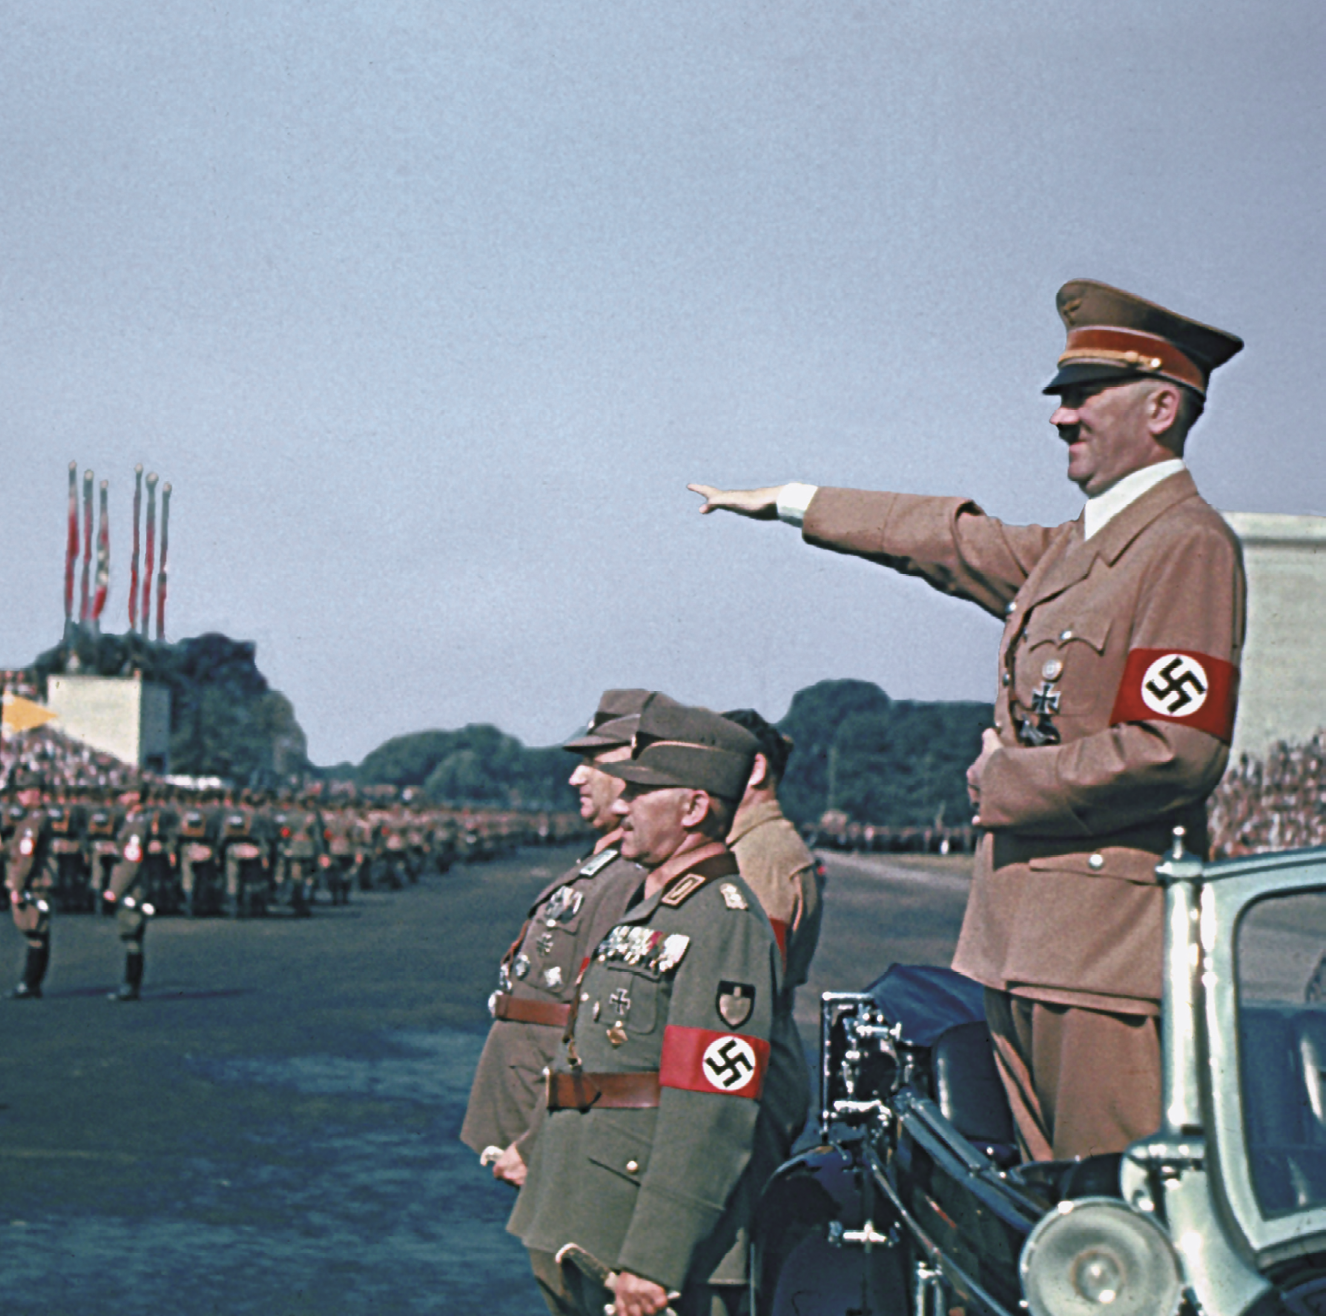 Fotografia. Adolf Hitler em pé, dentro de um carro com a capota aberta. Ele veste uniforme marrom claro. Em um dos braços uma braçadeira vermelha com o símbolo da suástica. Ele saúda os militares perfilados com o braço esticado e a palma da mão para baixo.